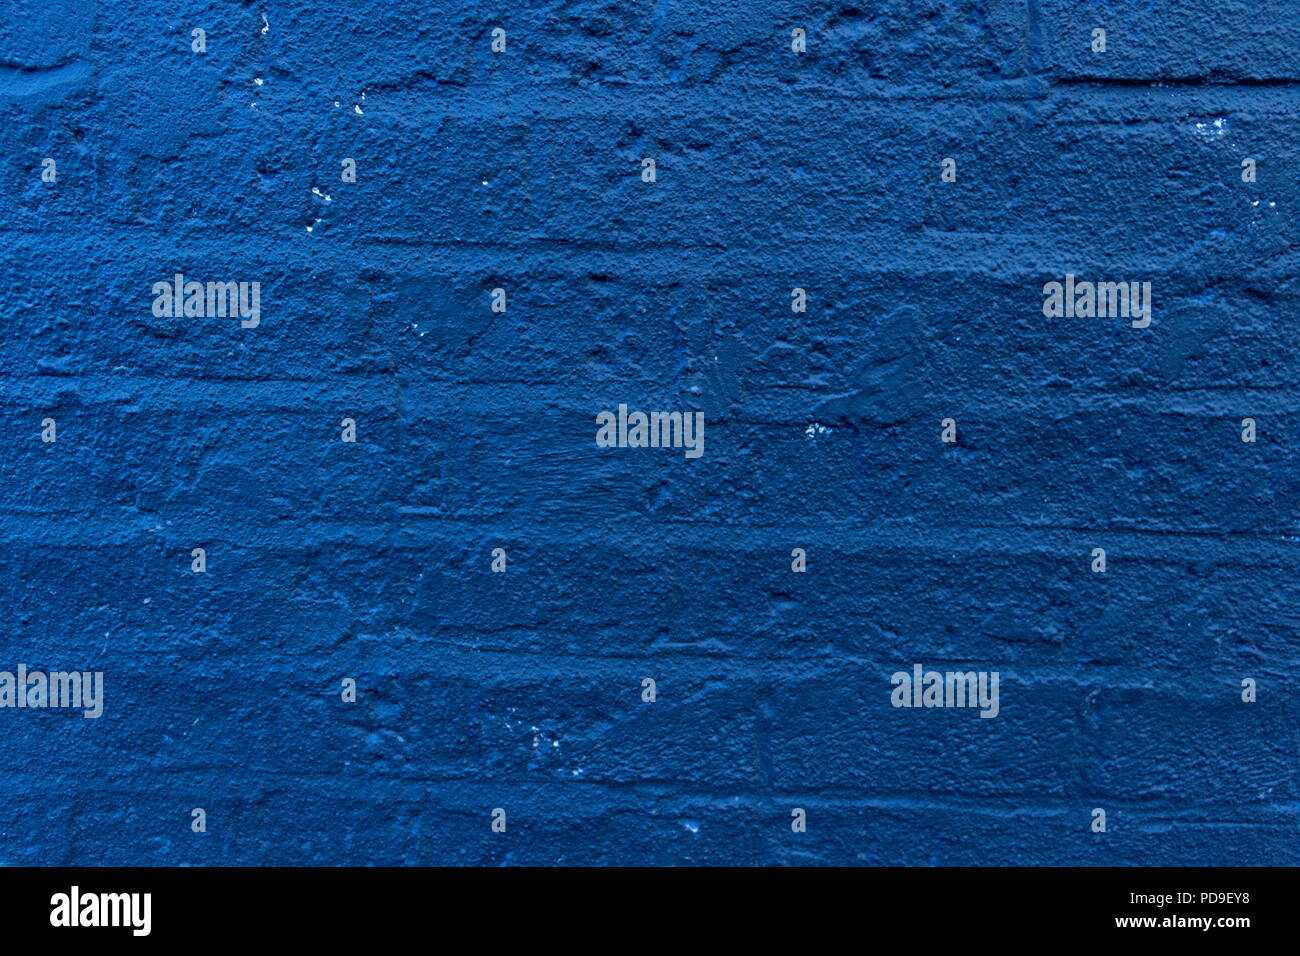 Detailansicht Der bluebonnet, blau, marine, blau, dunkelblau, Indigo, Sargassosee - Pantone-bemalte Mauer Stockfoto